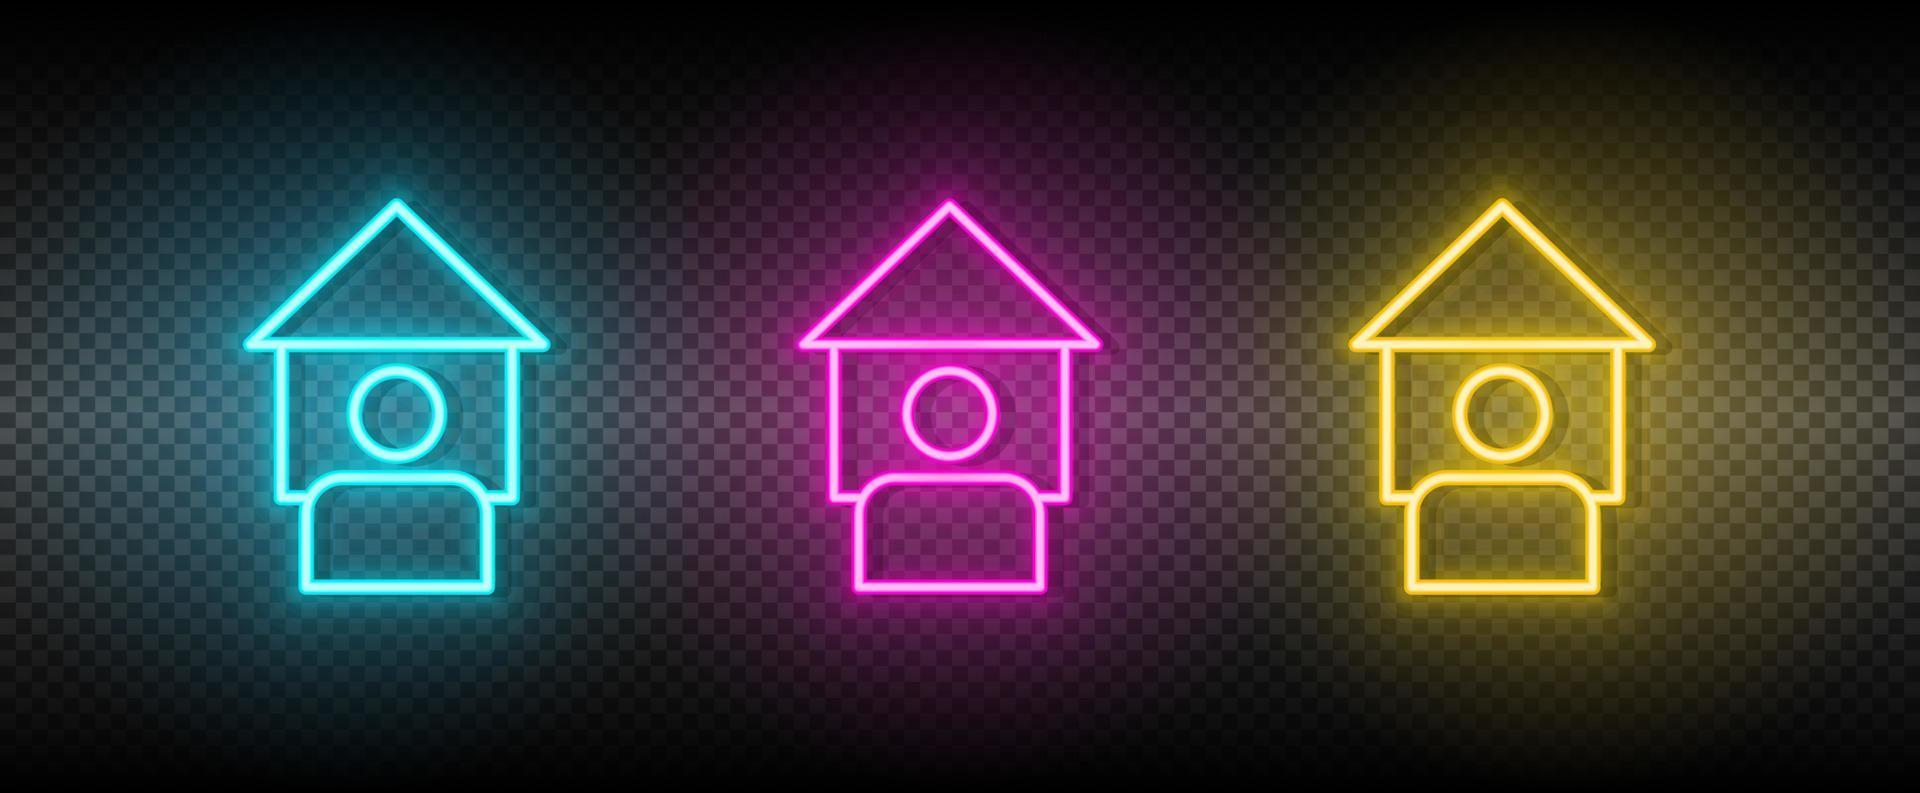 verklig egendom vektor hus, chef, fast egendom. illustration neon blå, gul, röd ikon uppsättning